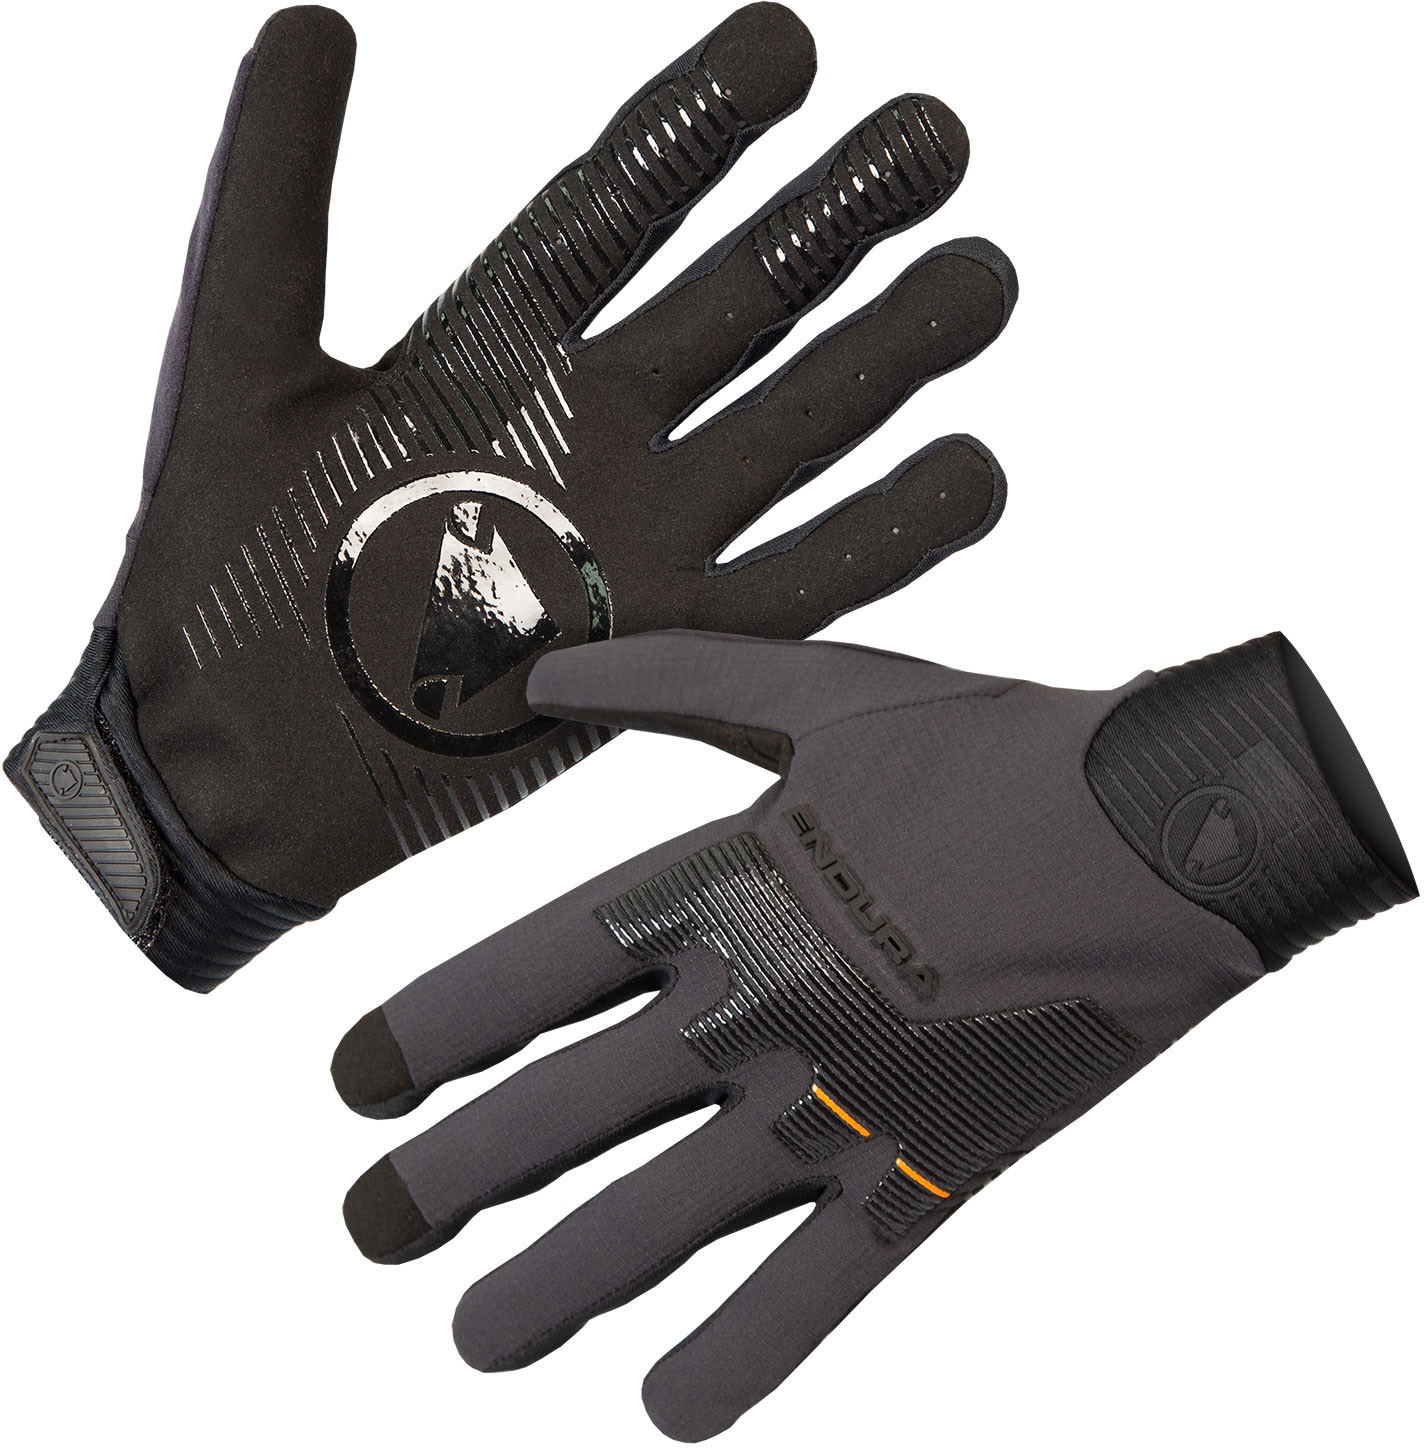  - Endura MT500 D3O Glove - Black